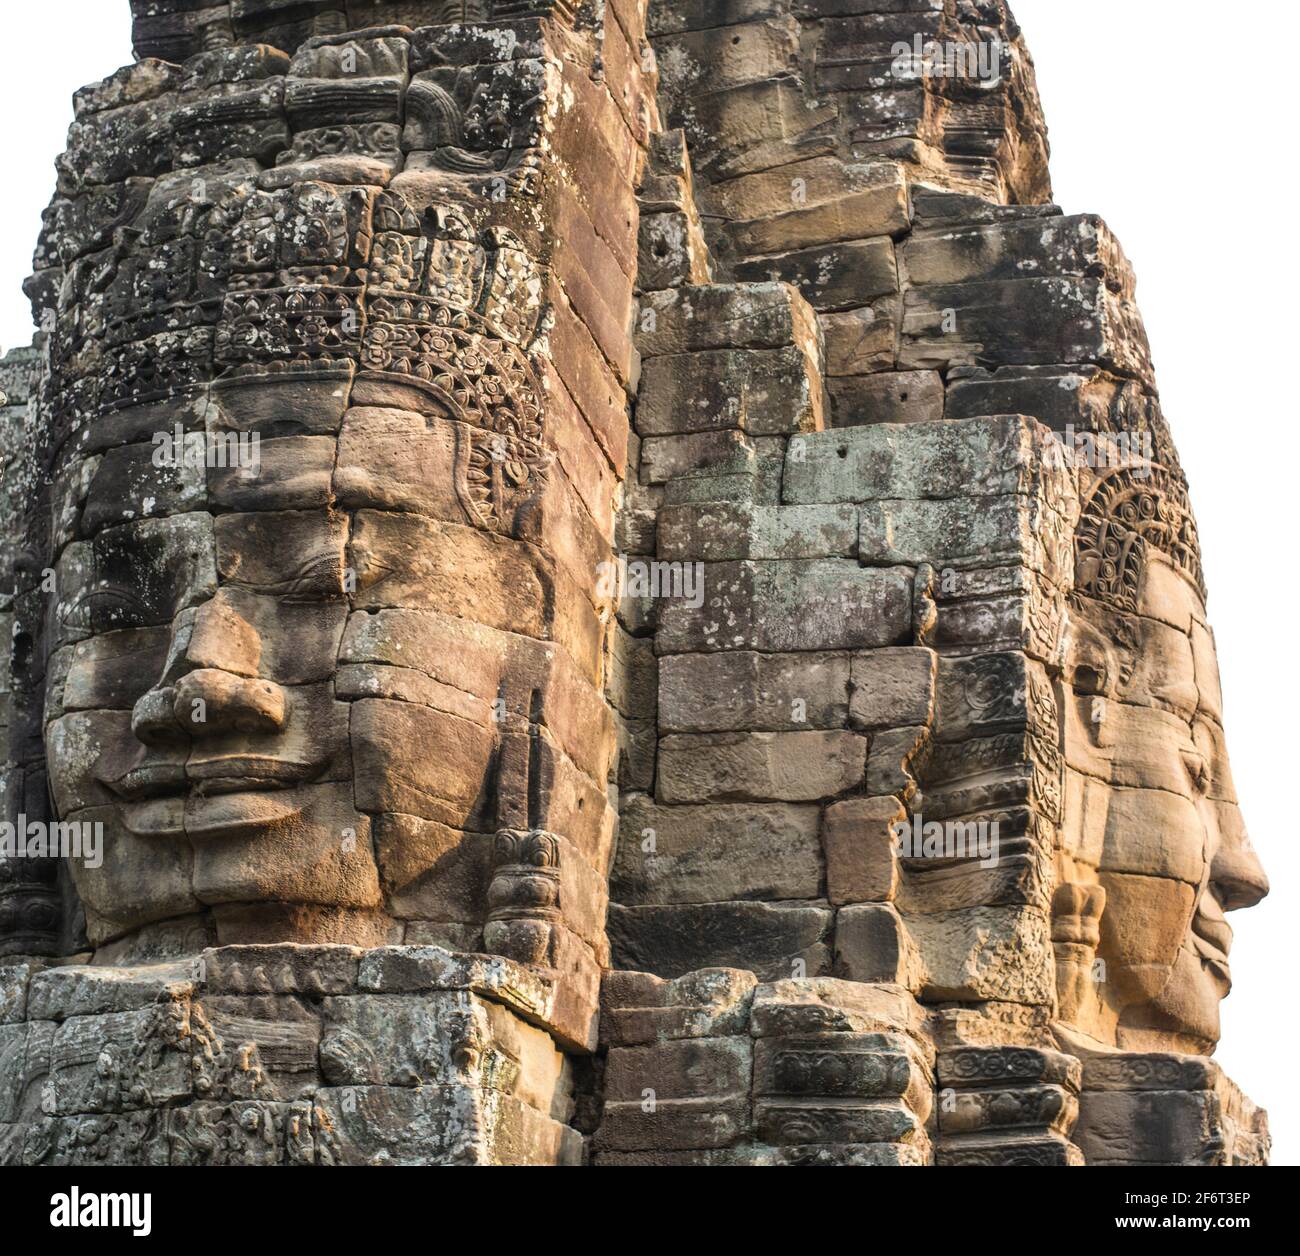 Der Bayon ist ein bekannter und reich dekorierter Khmer Tempel in Angkor in Kambodscha. Erbaut im späten 12th Jahrhundert oder Anfang 13th Jahrhundert als die Stockfoto